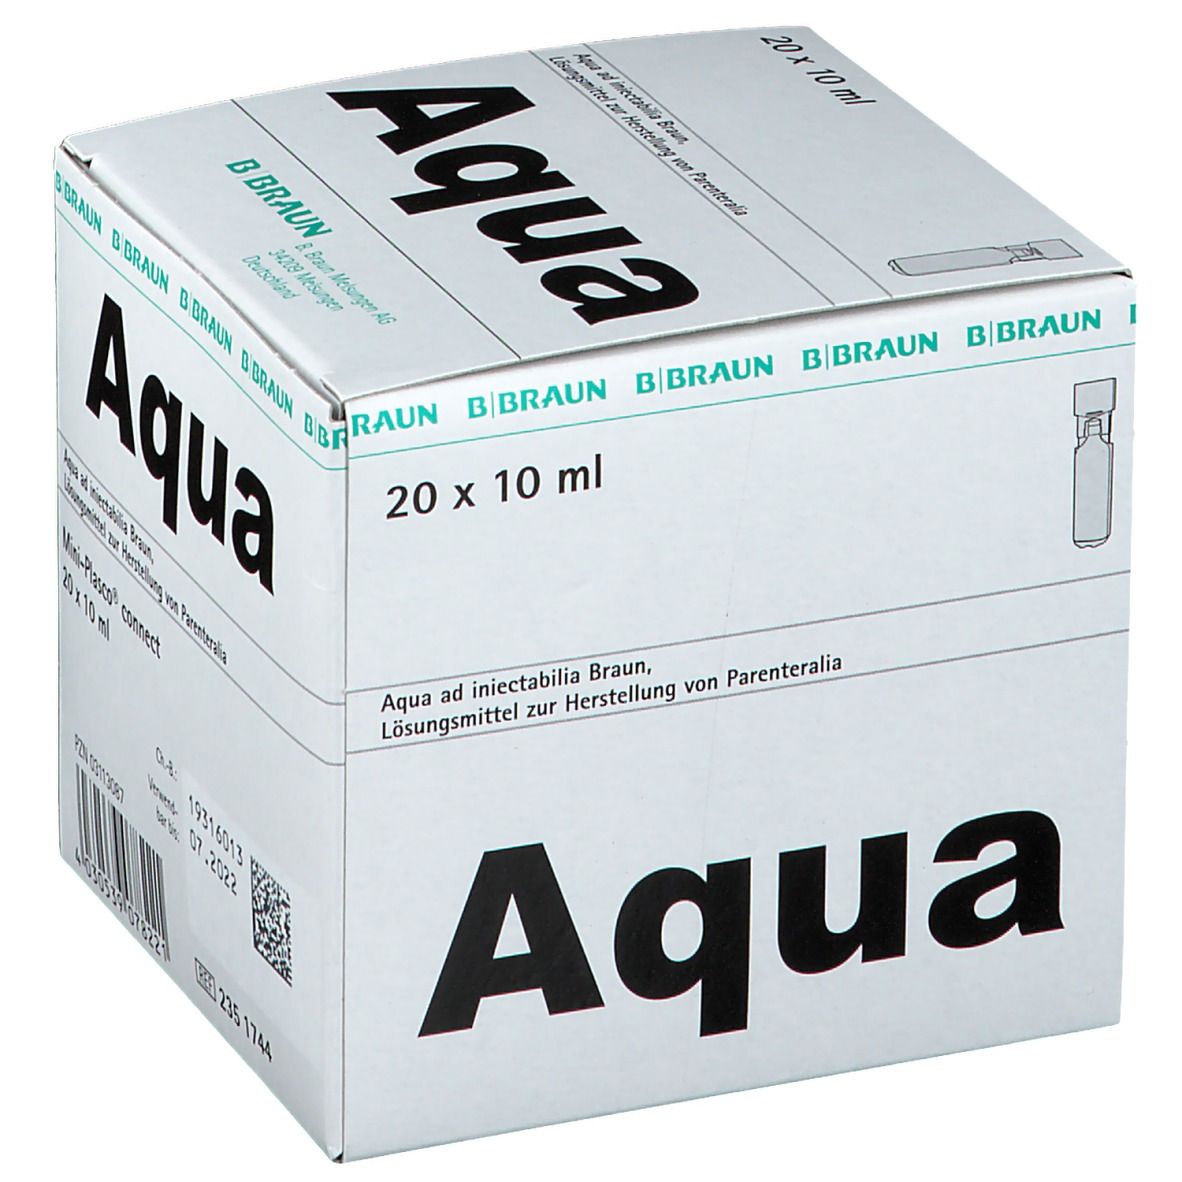 Aqua Ad Inject Miniplasco connect Ampullen